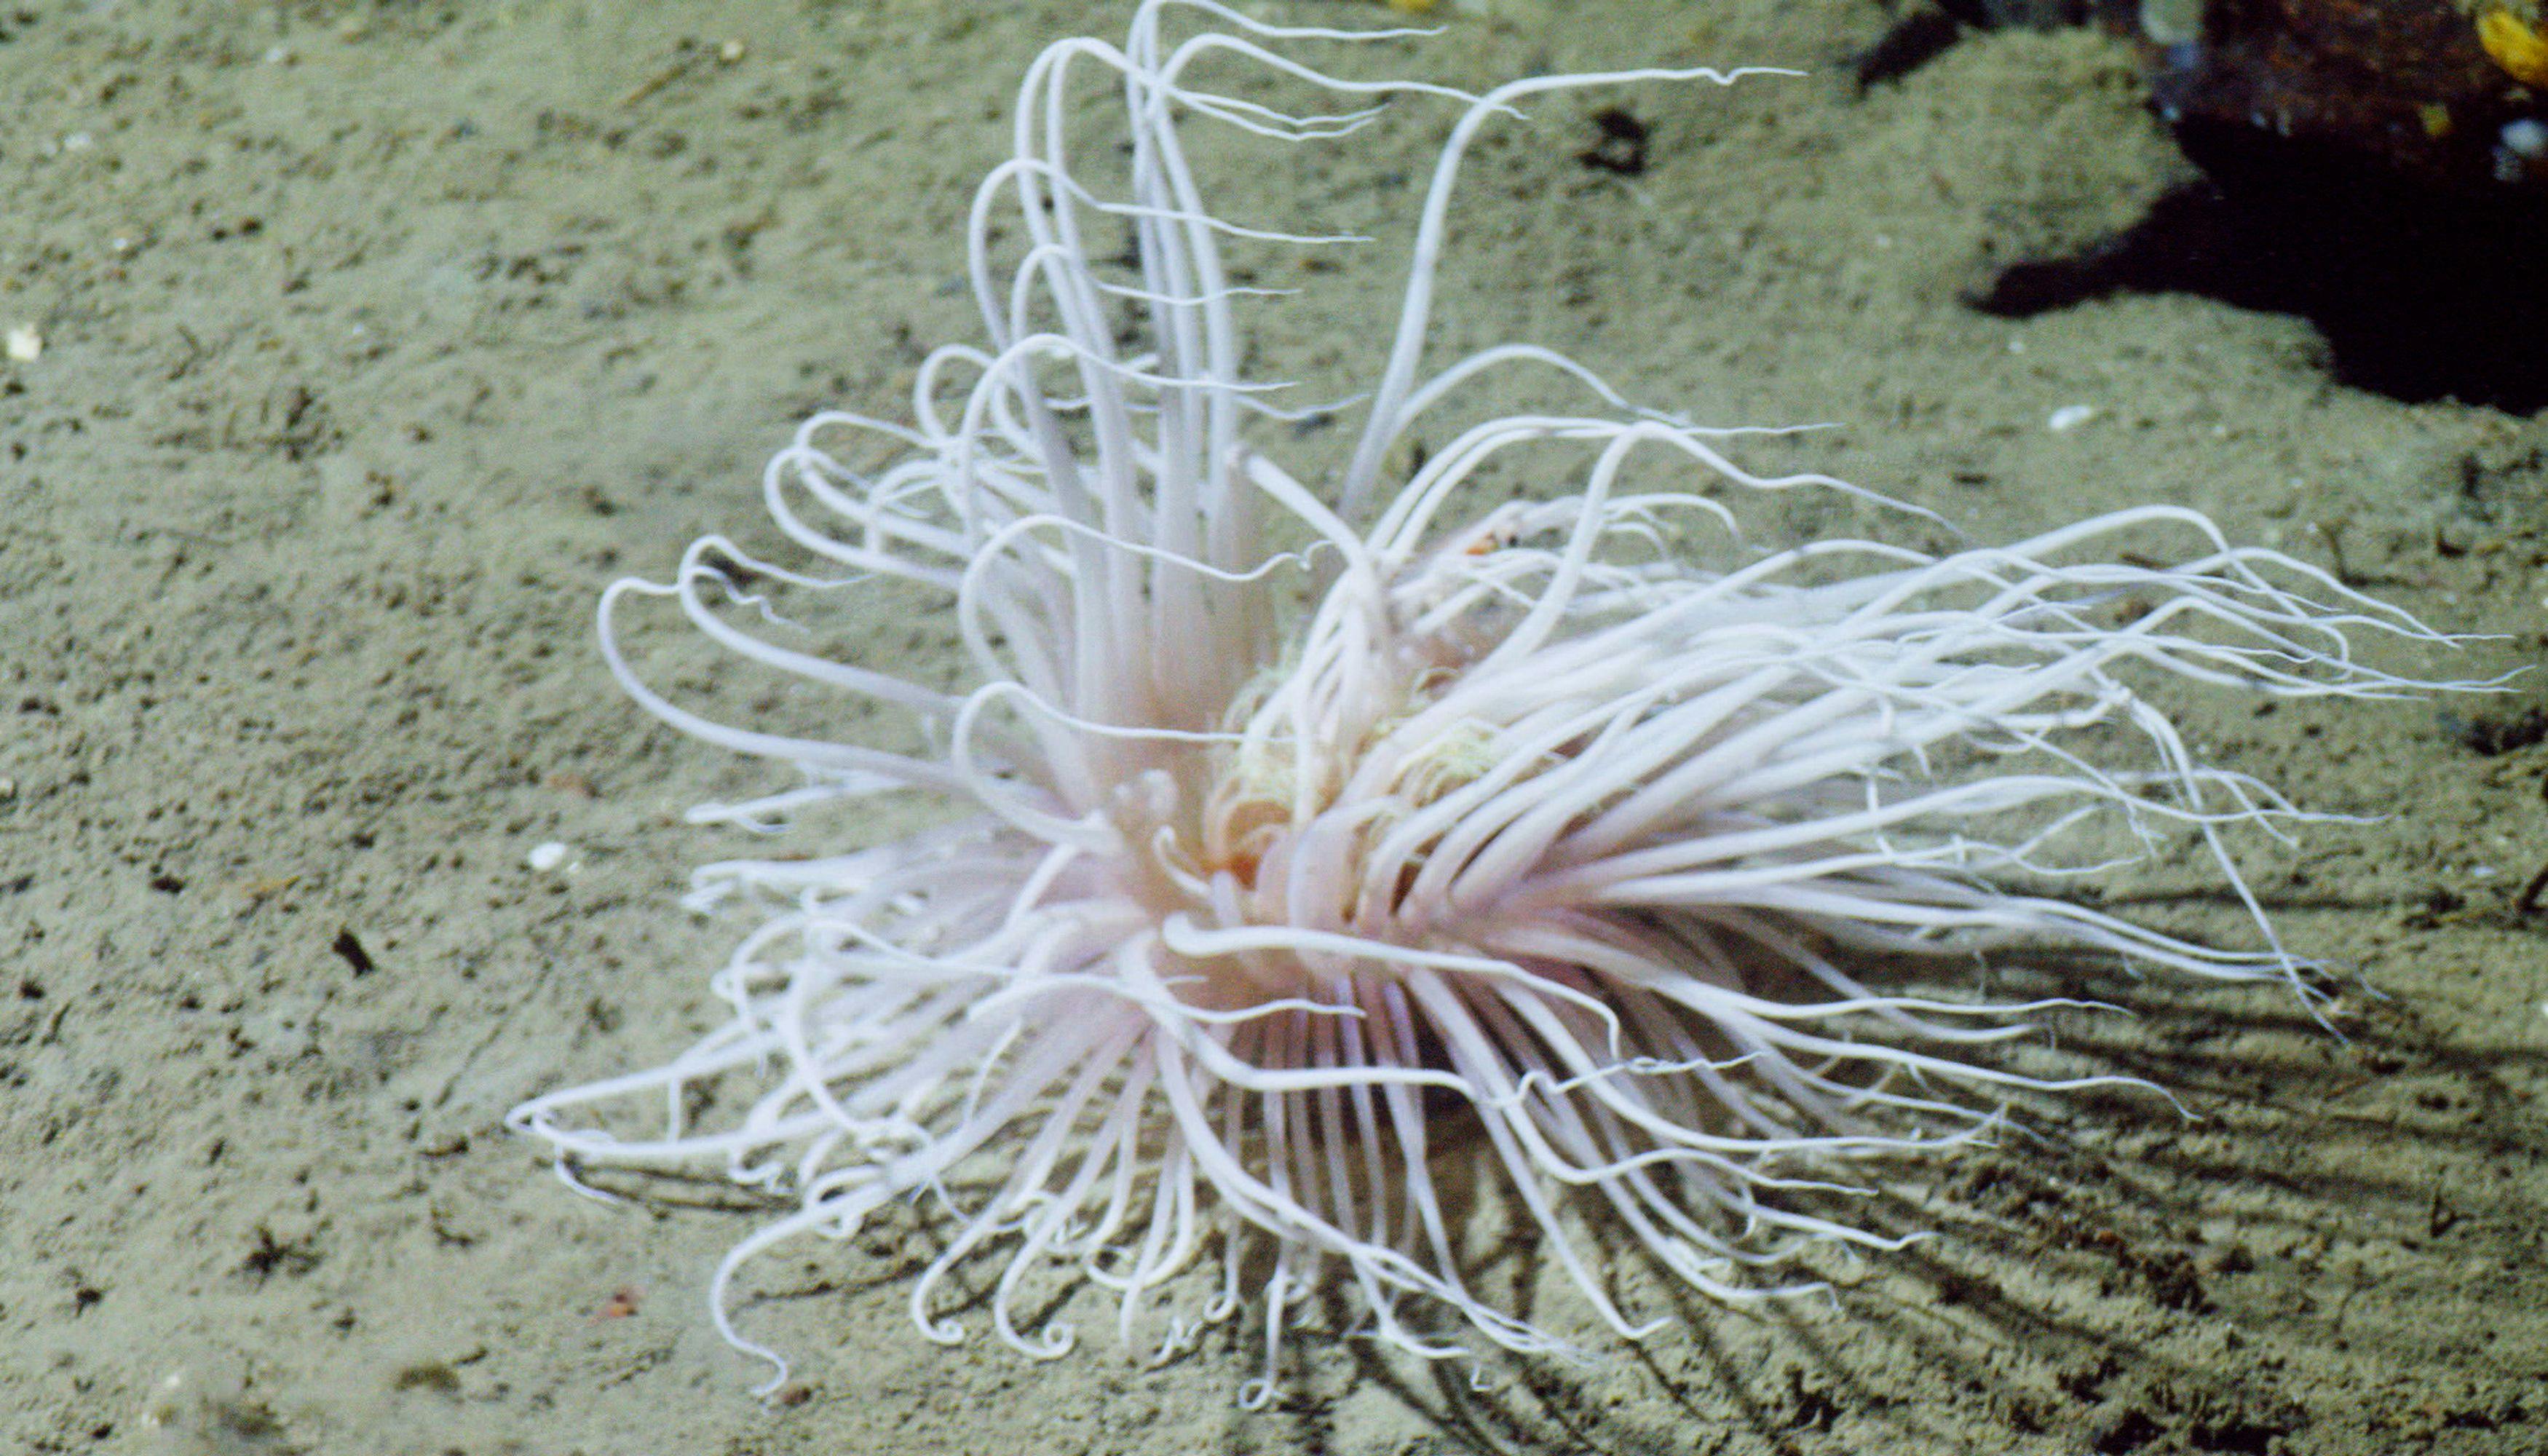 A white sea anemone